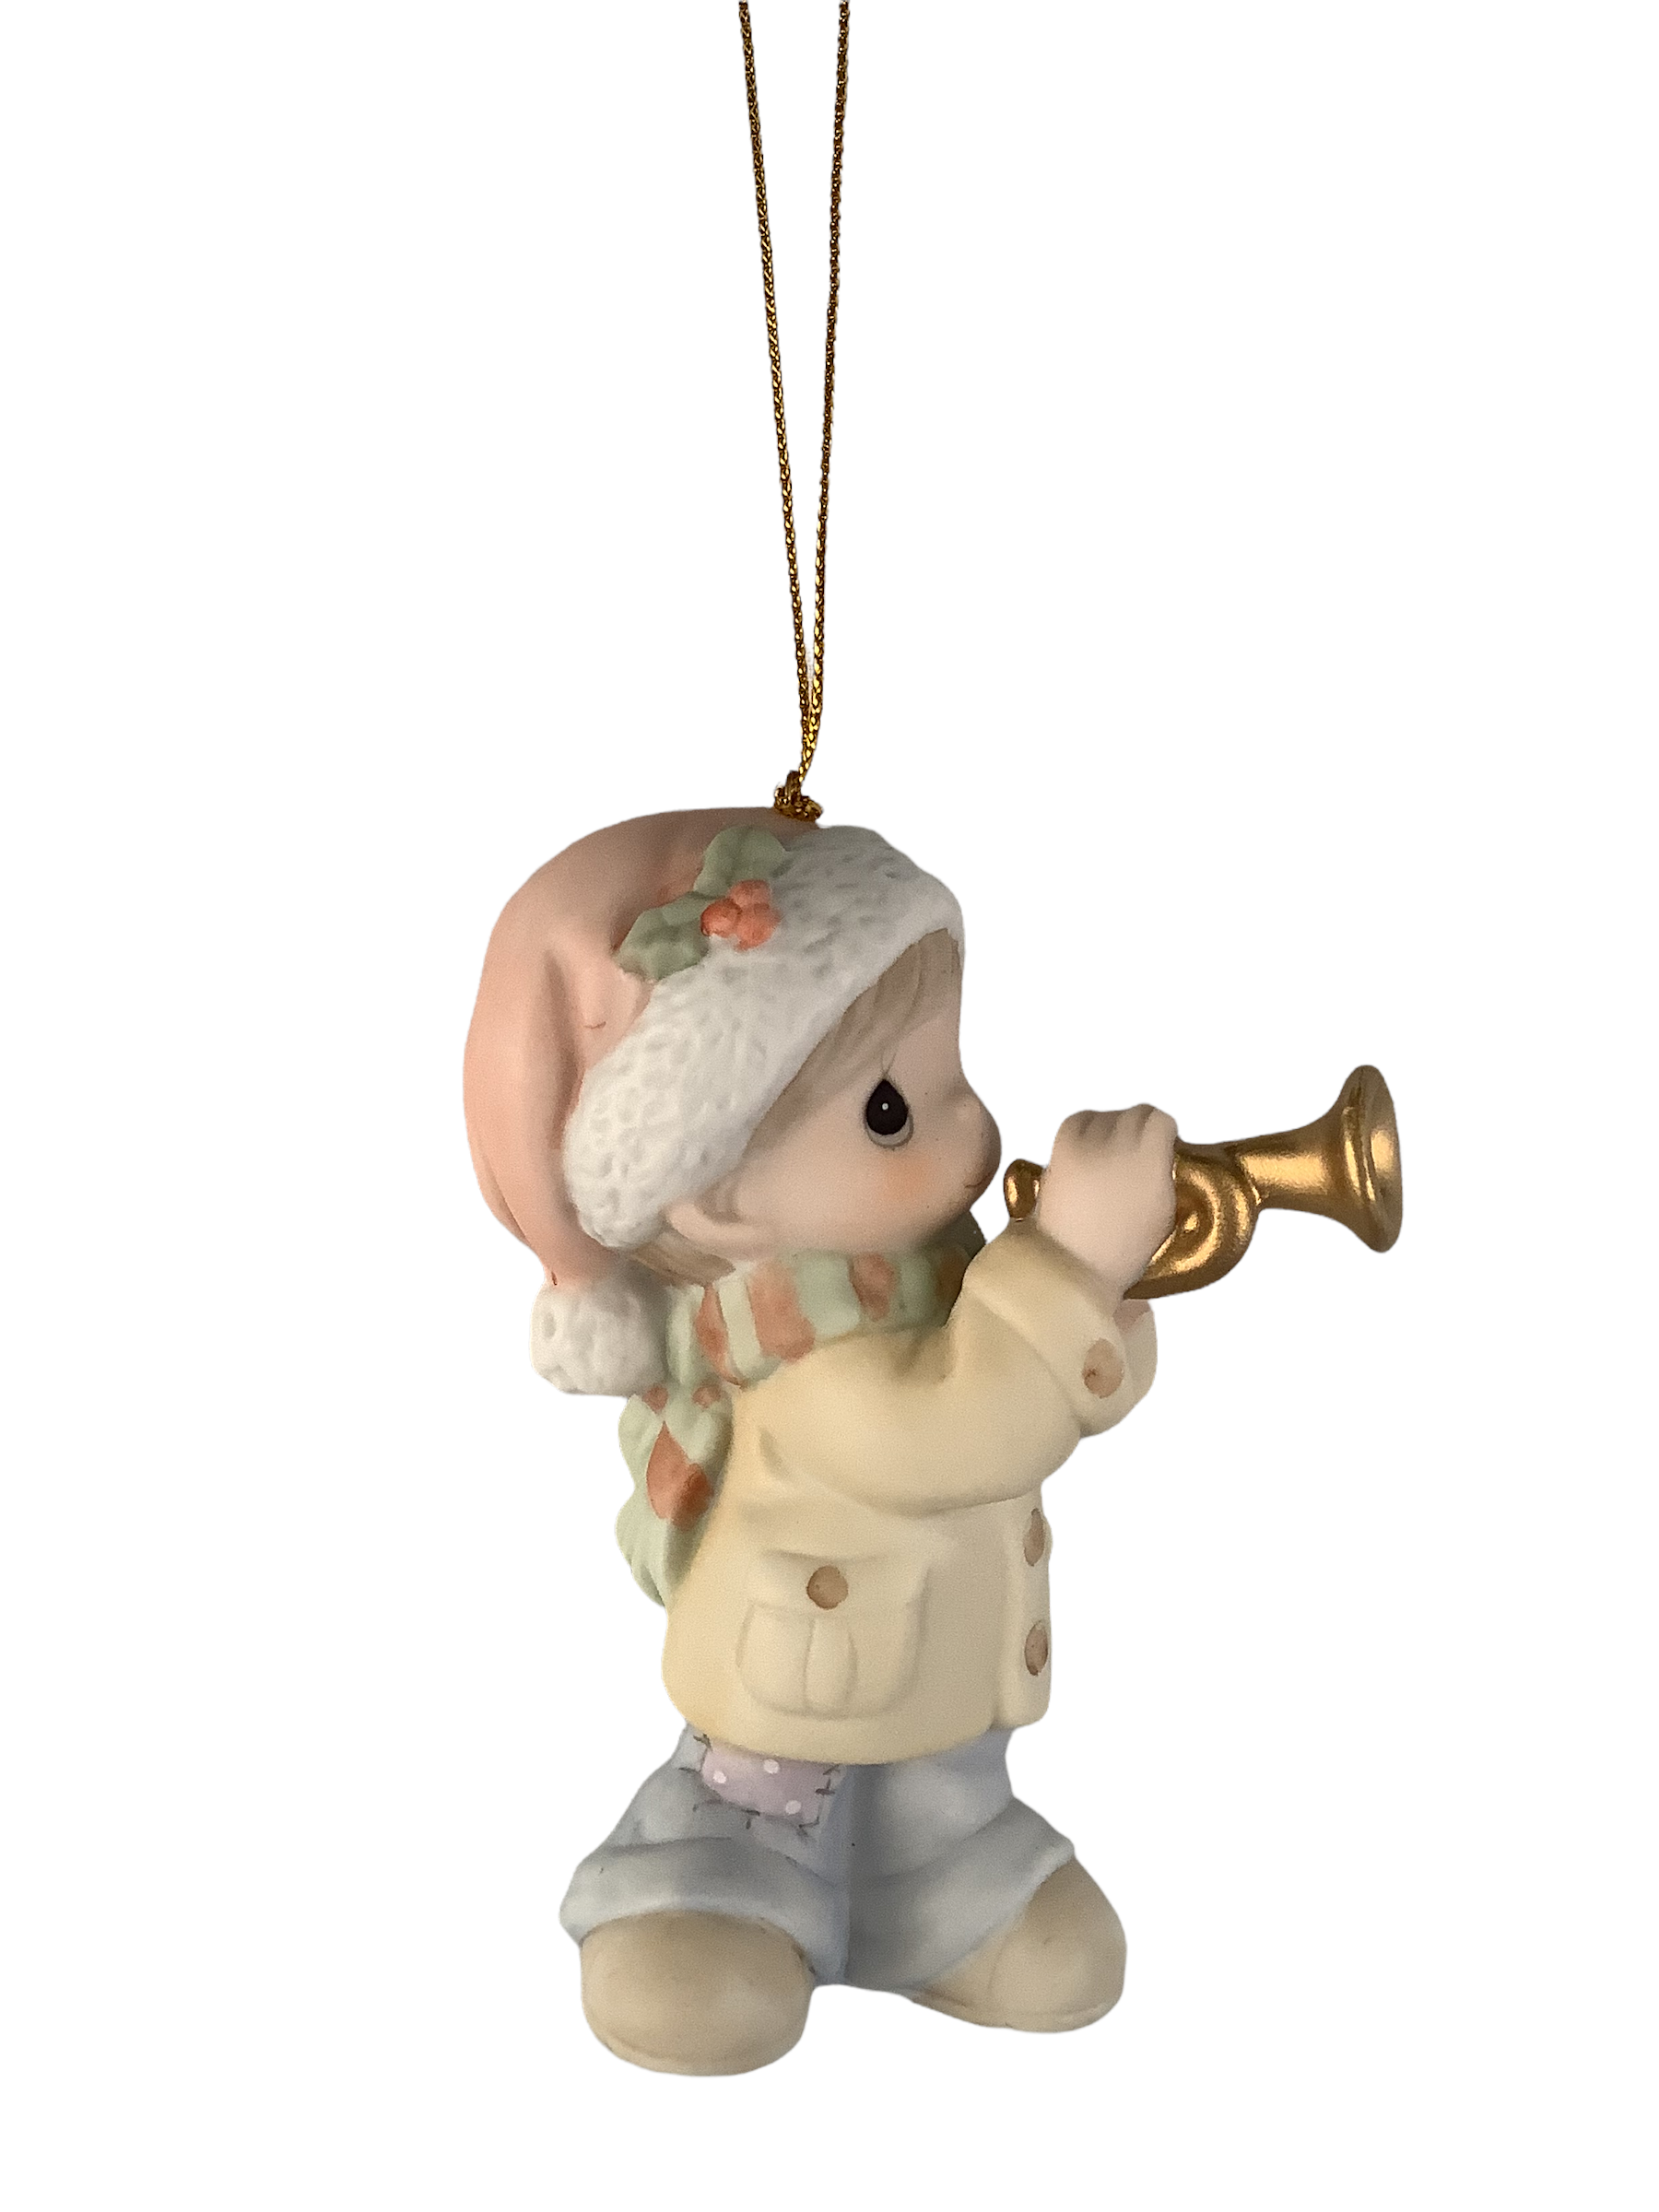 Trumpet His Arrival - Precious Moment Ornament